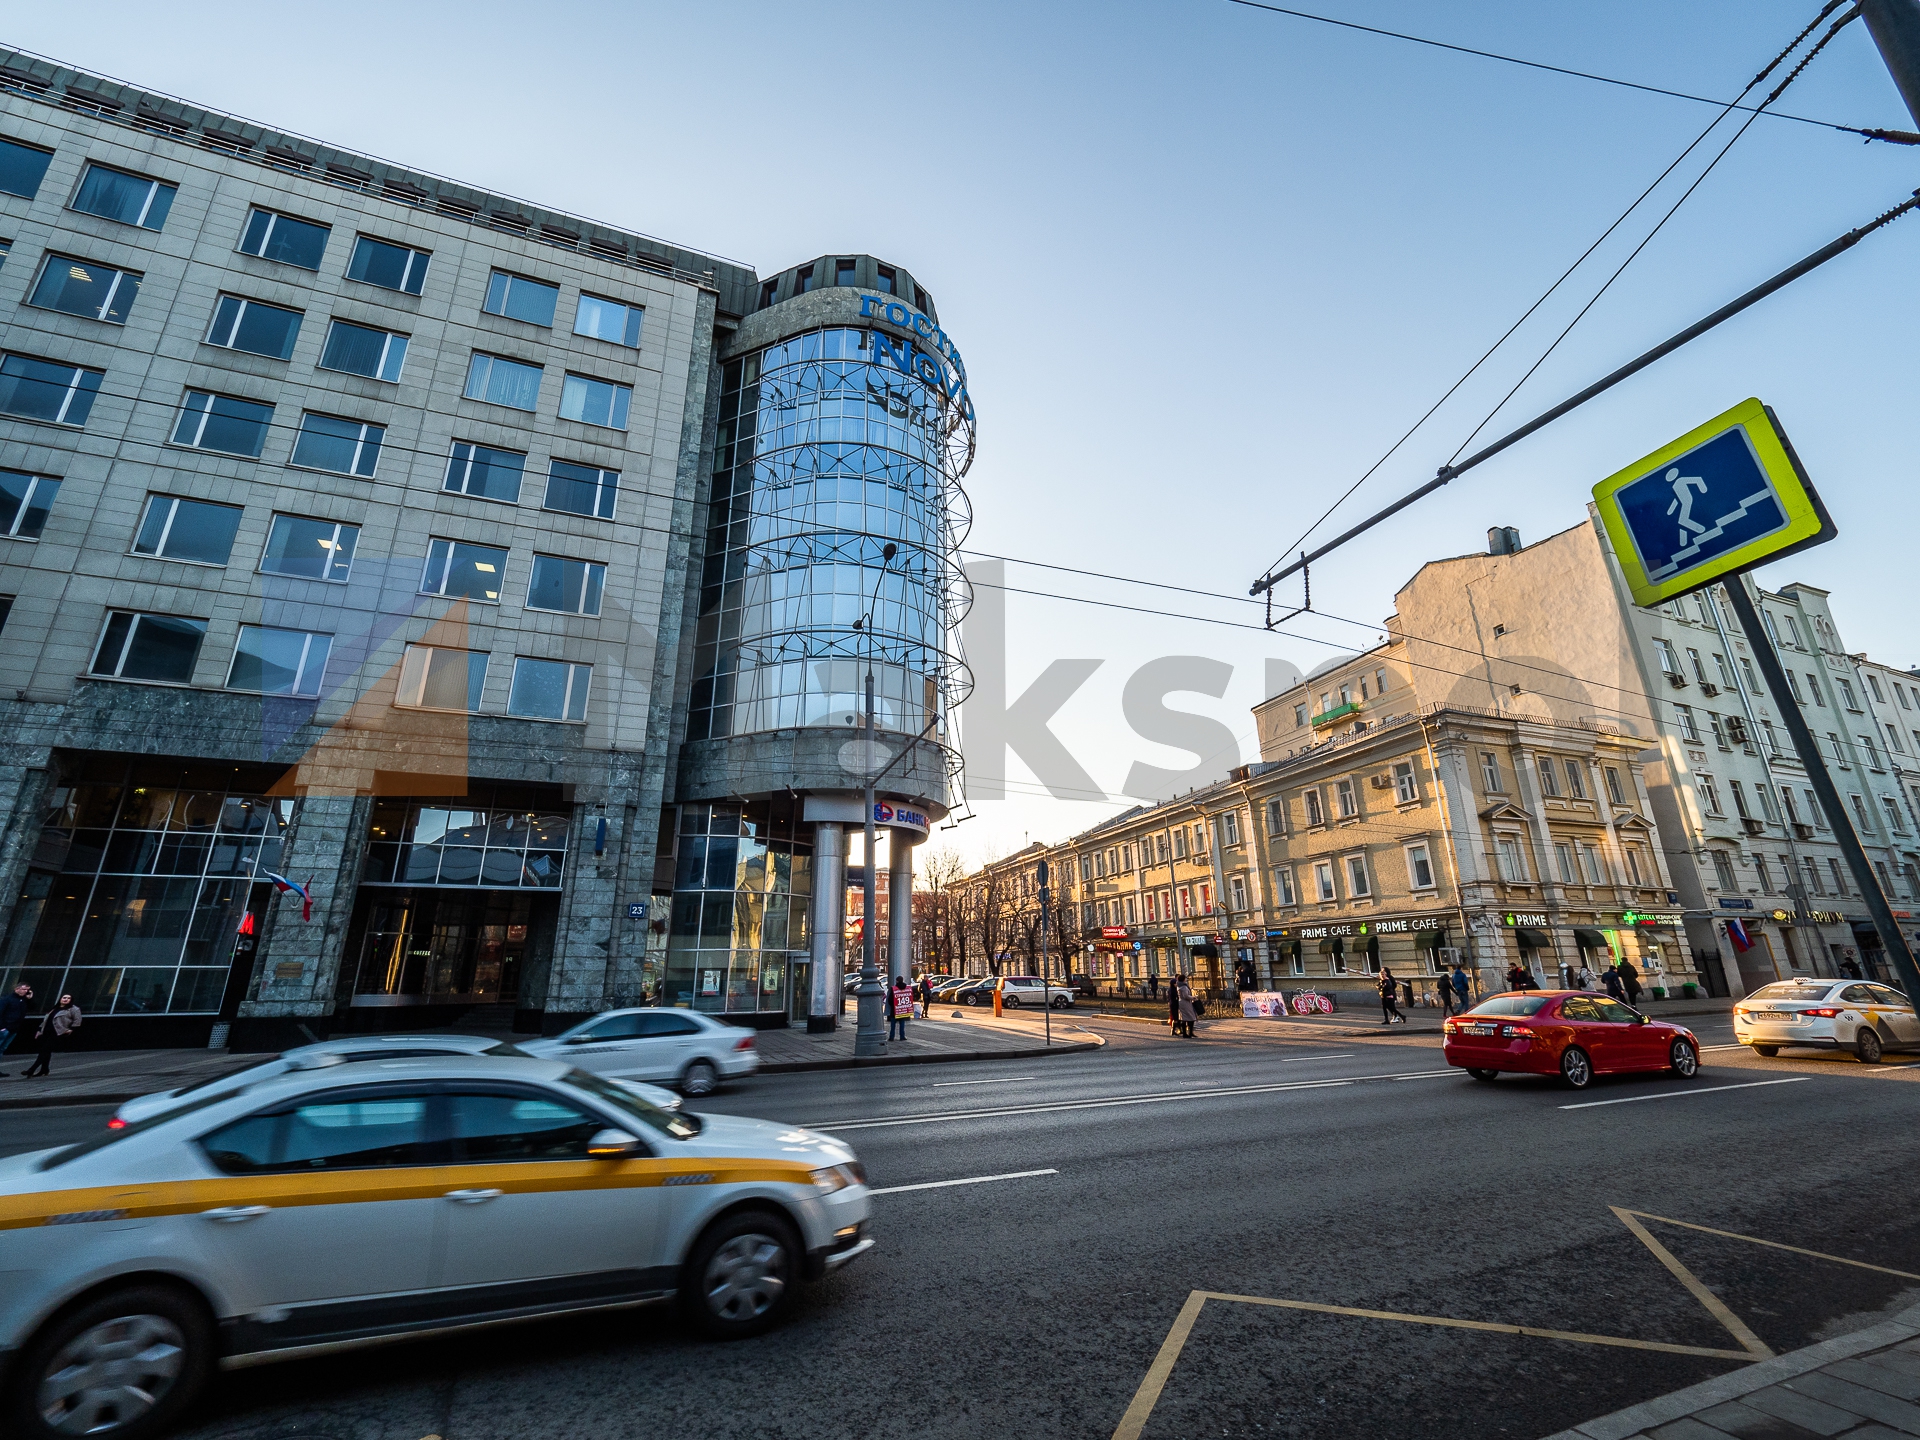 Улица новослободская в москве